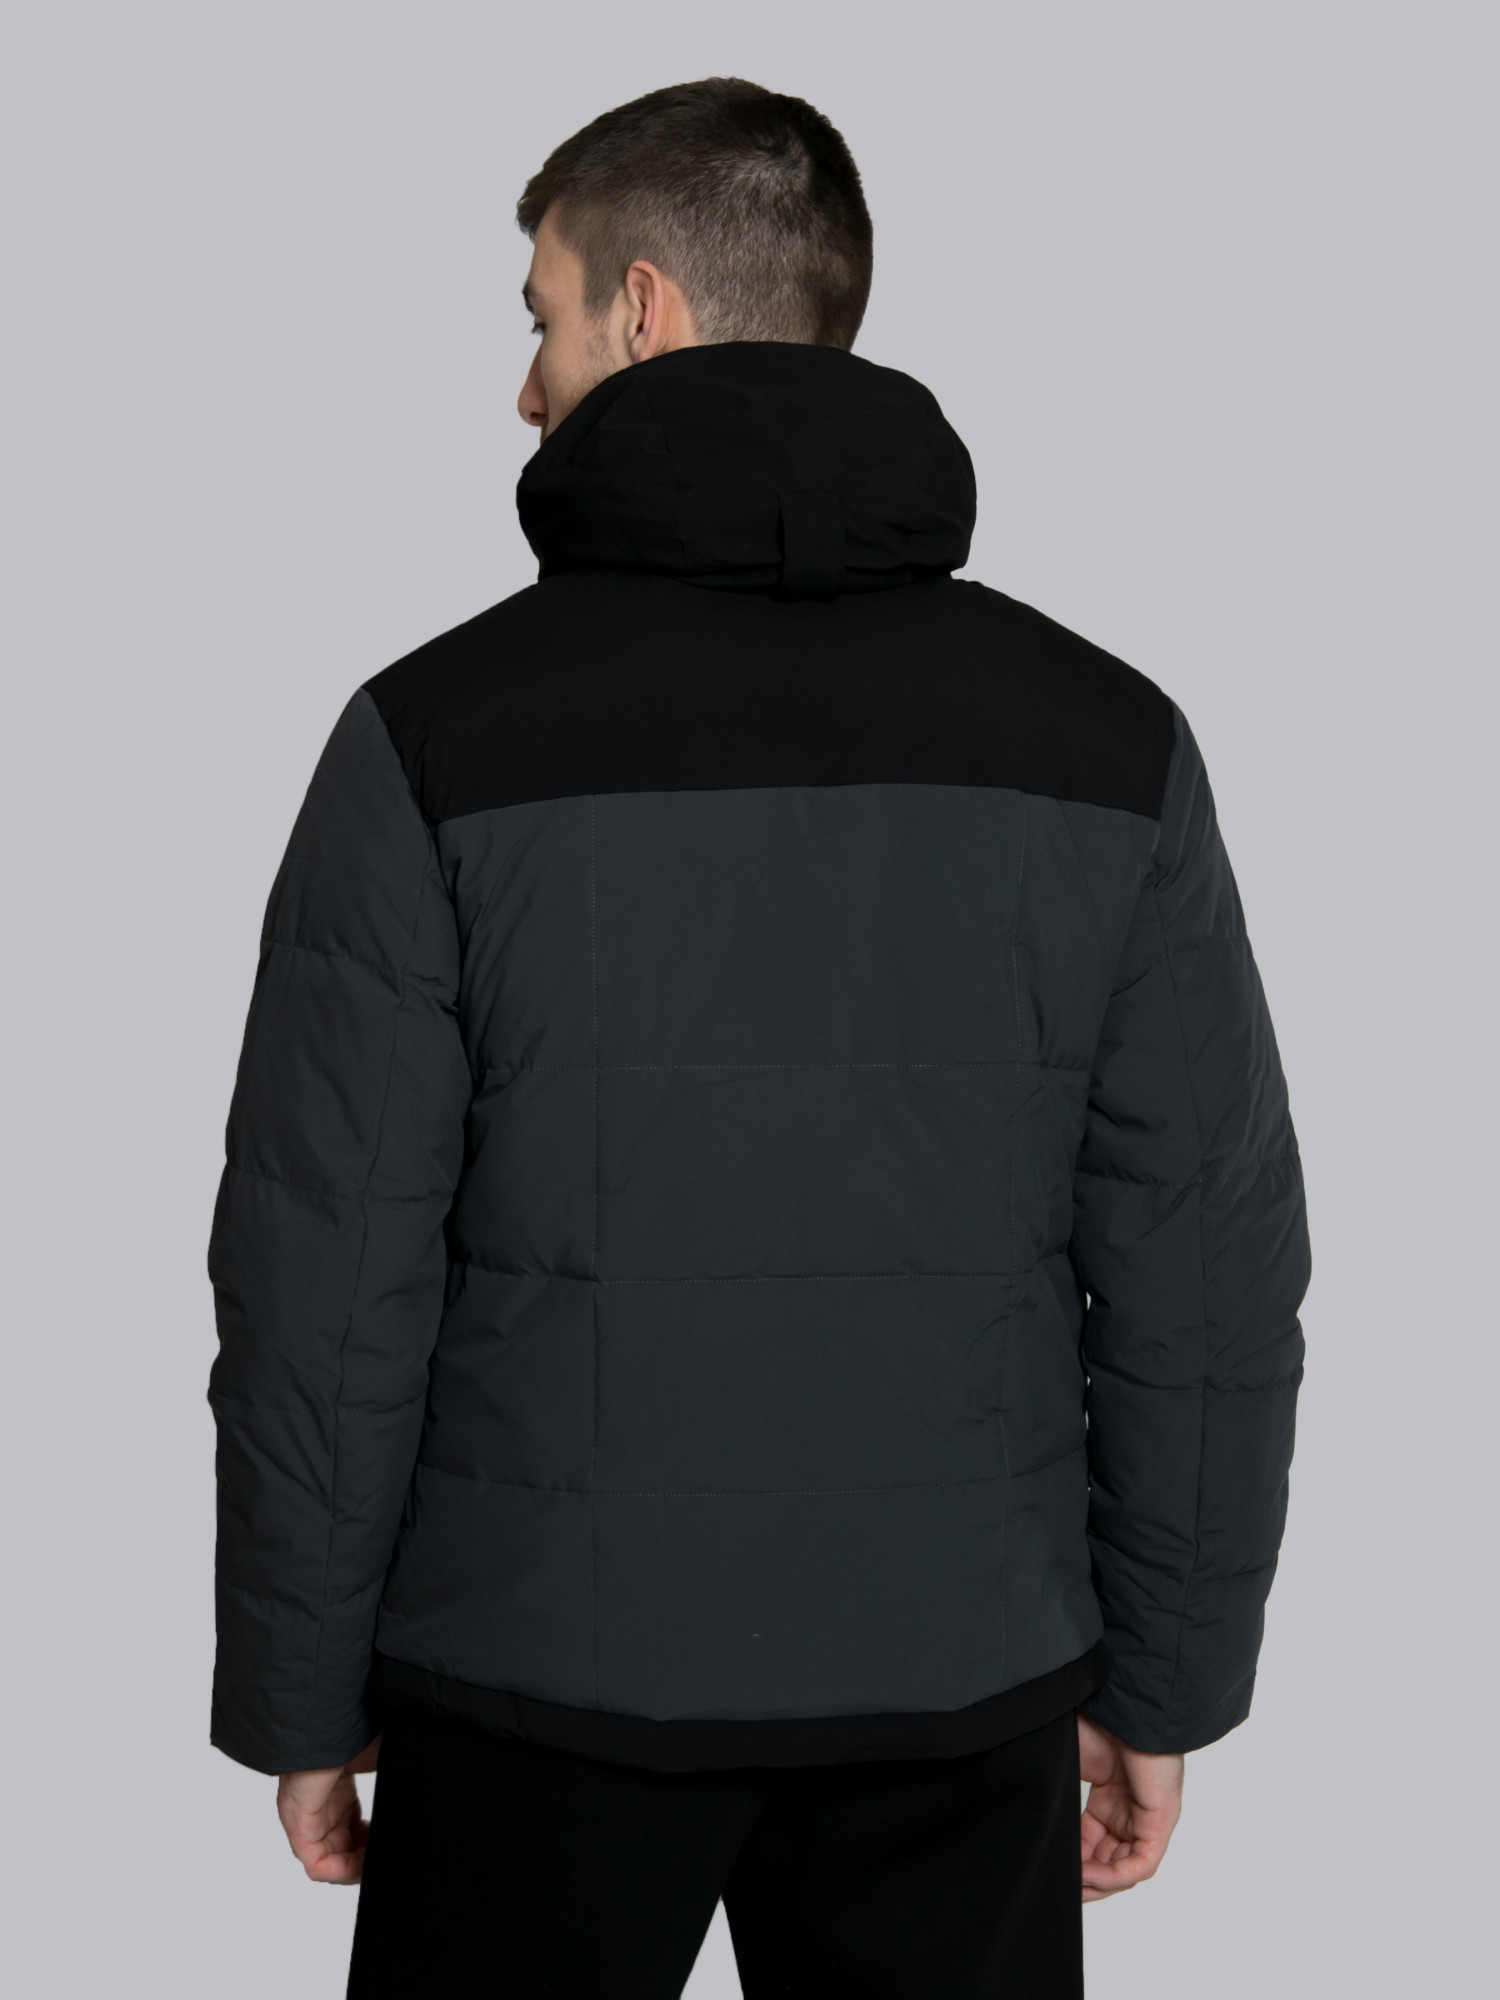 Куртка чоловіча Evoids Alphard темно-сіра 711333-020 